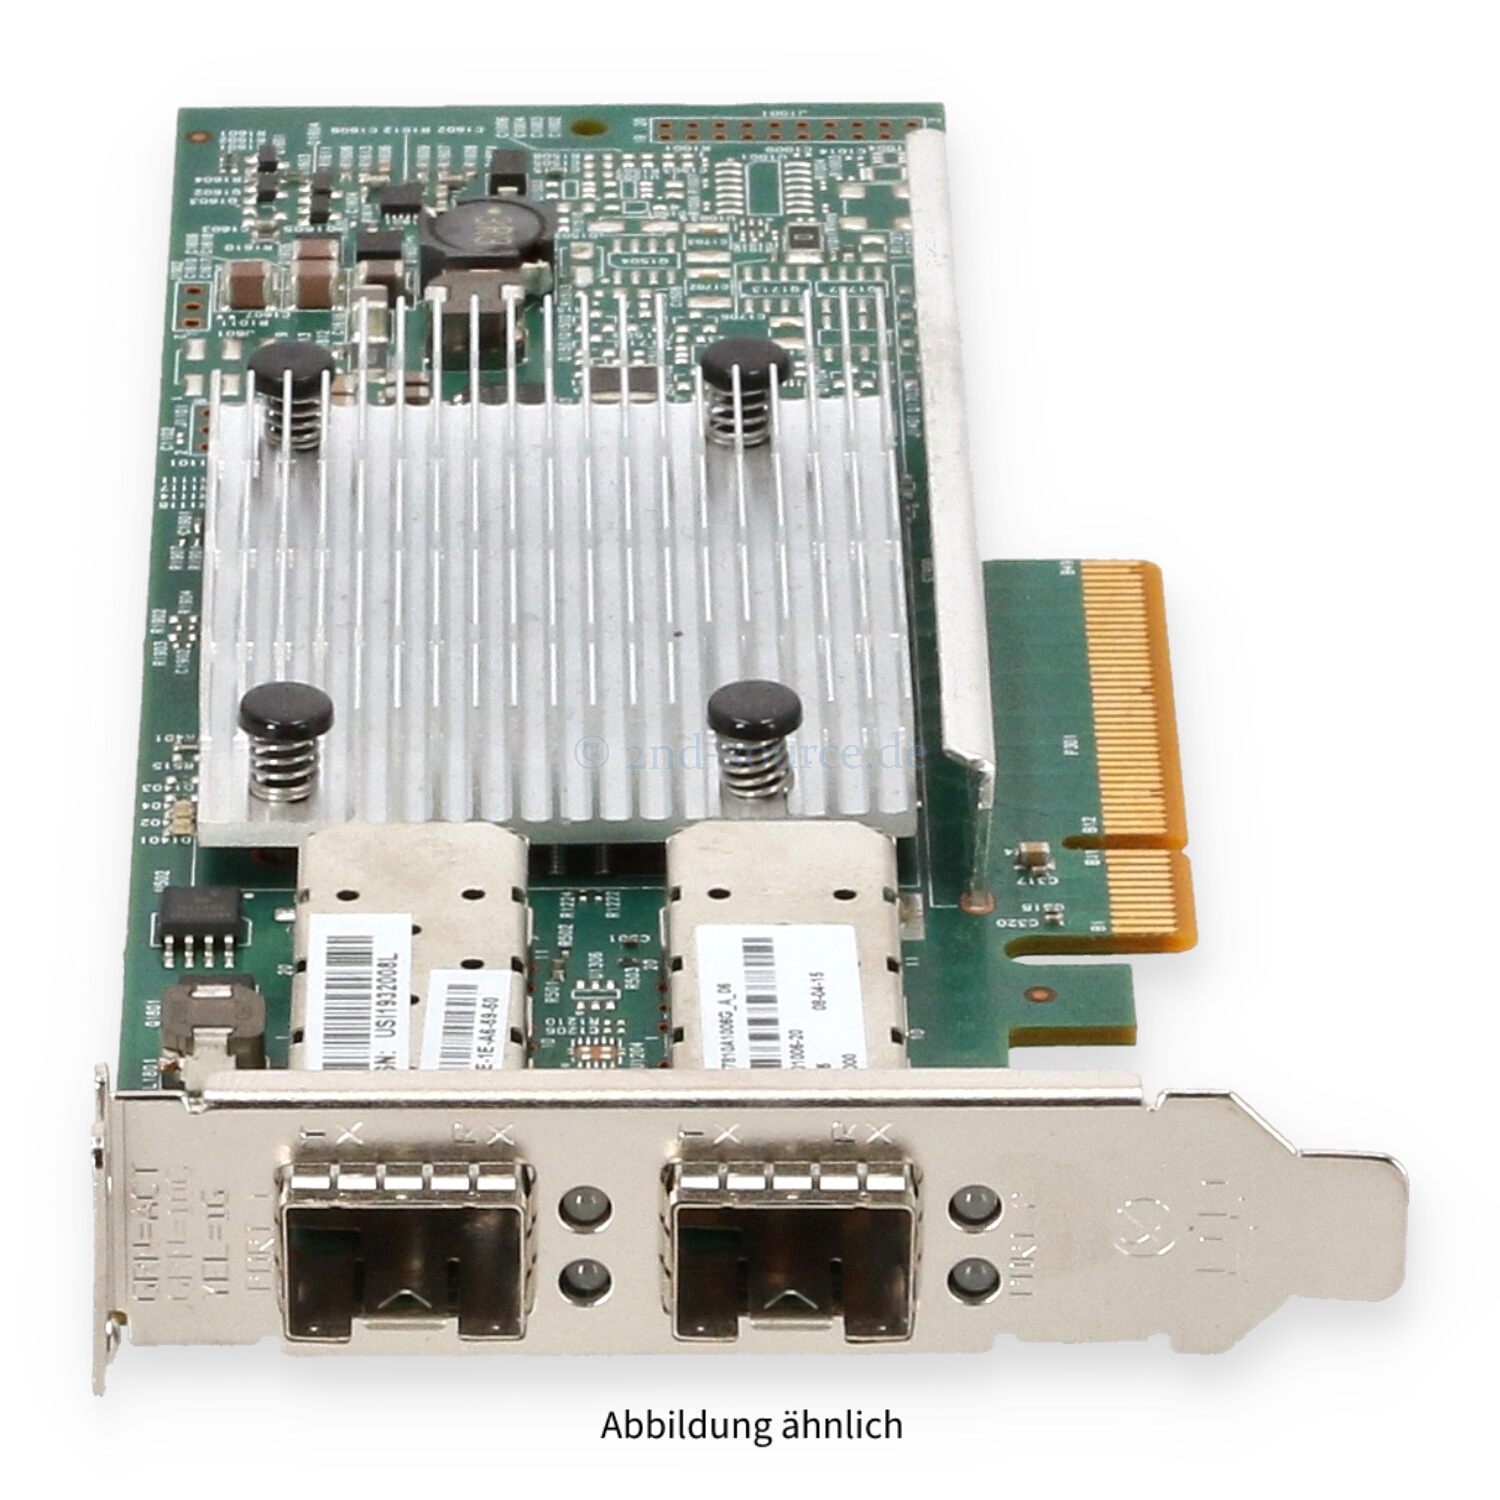 EMC Broadcom 957810A 2x 10GB SFP+ PCIe x8 Server Ethernet Adapter Low Profile 6713-201006-20